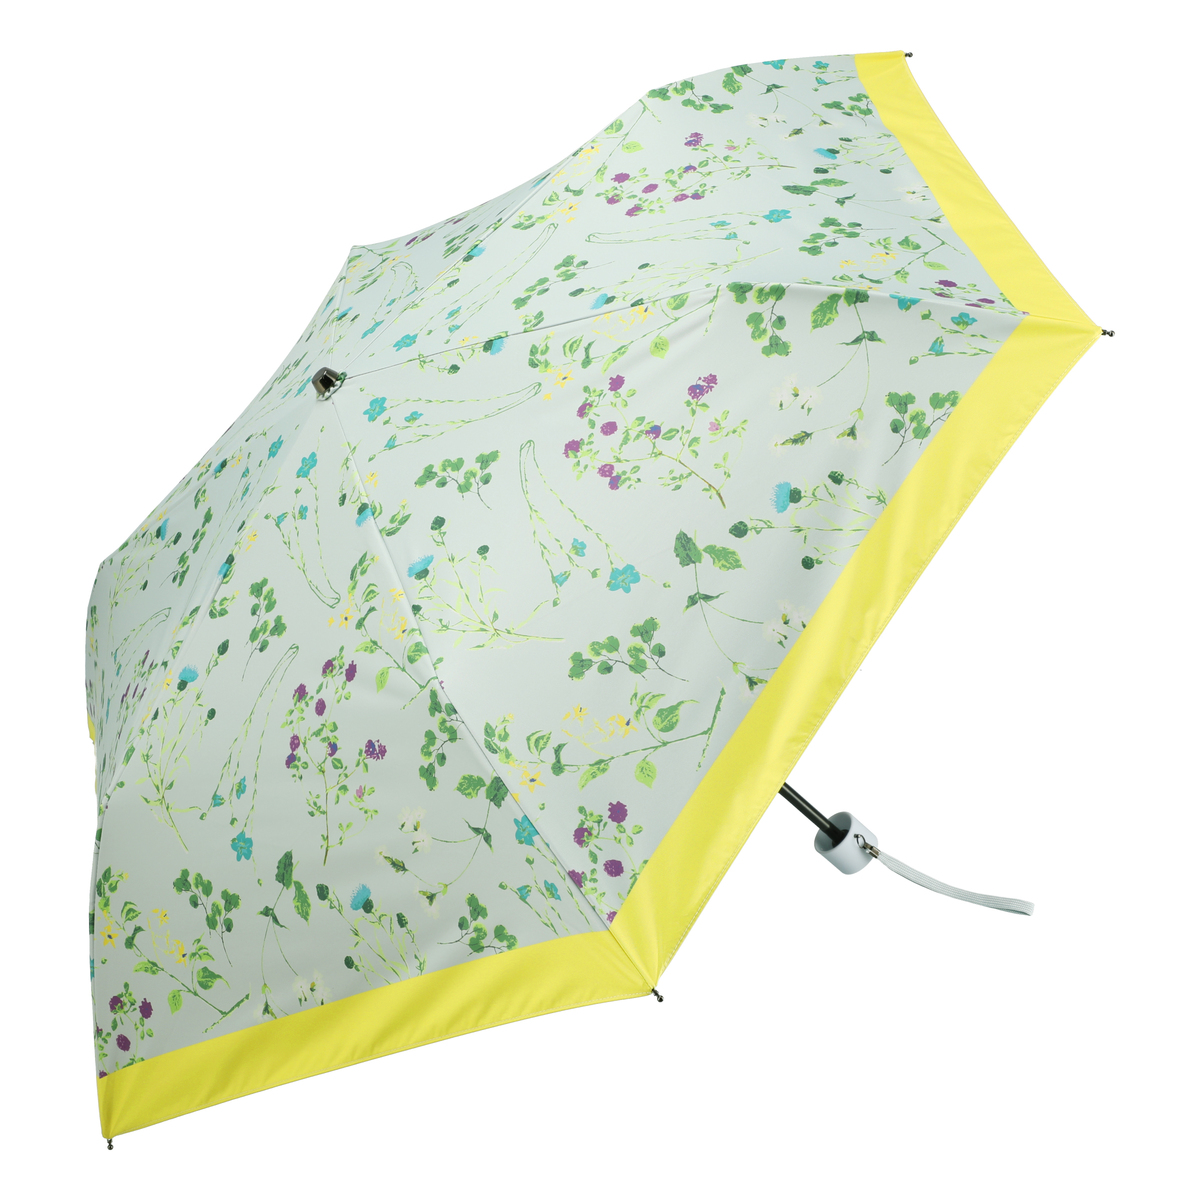  ルナジュメール UV+1級遮光+晴雨兼用ボタニカル柄折傘  イエロー